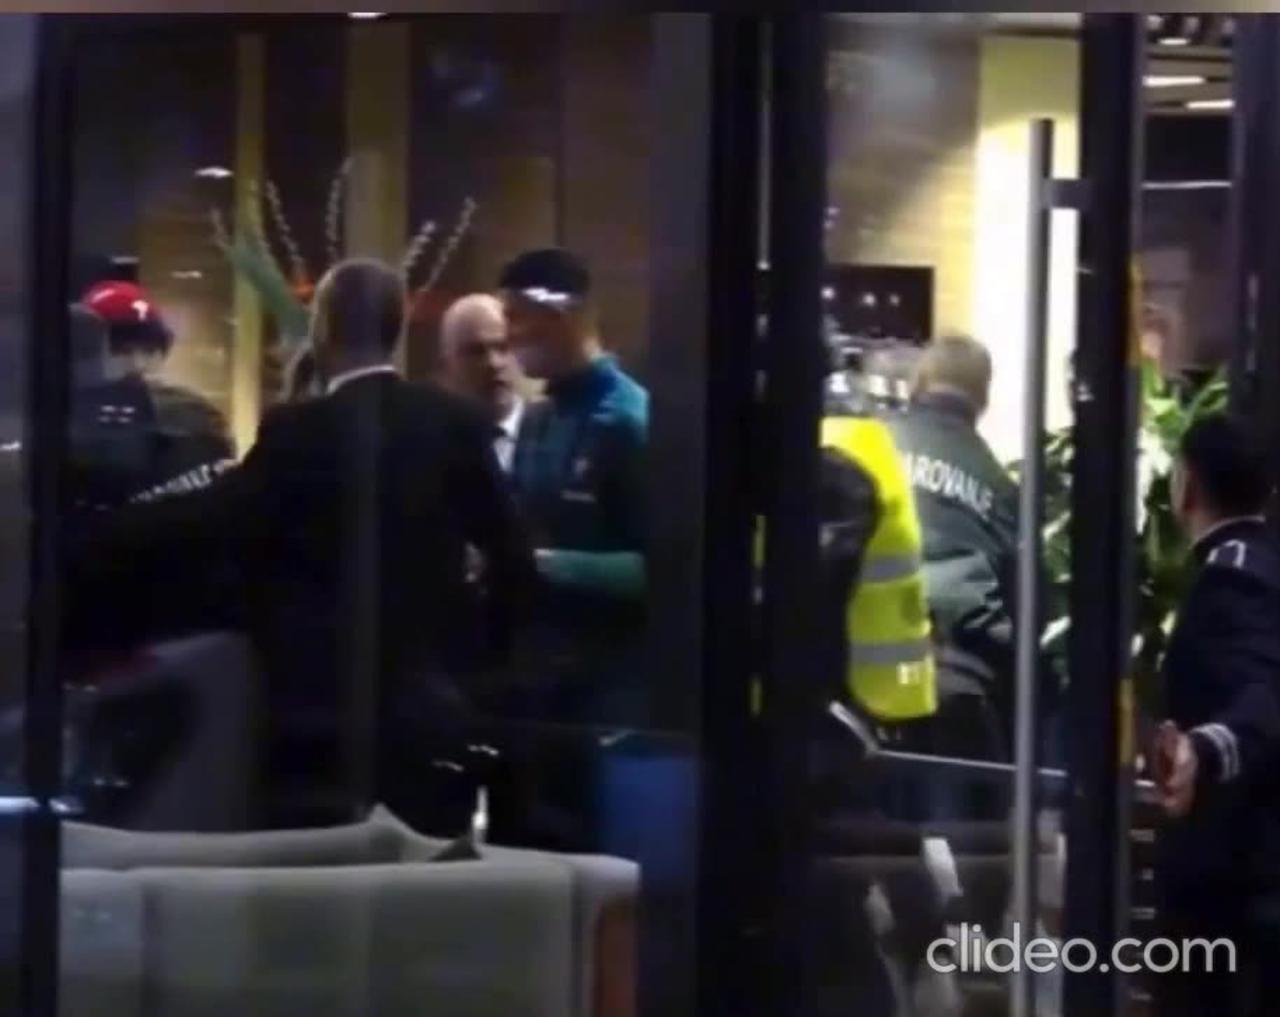 Cristiano Ronaldo was attacked by a fan in Slovenia